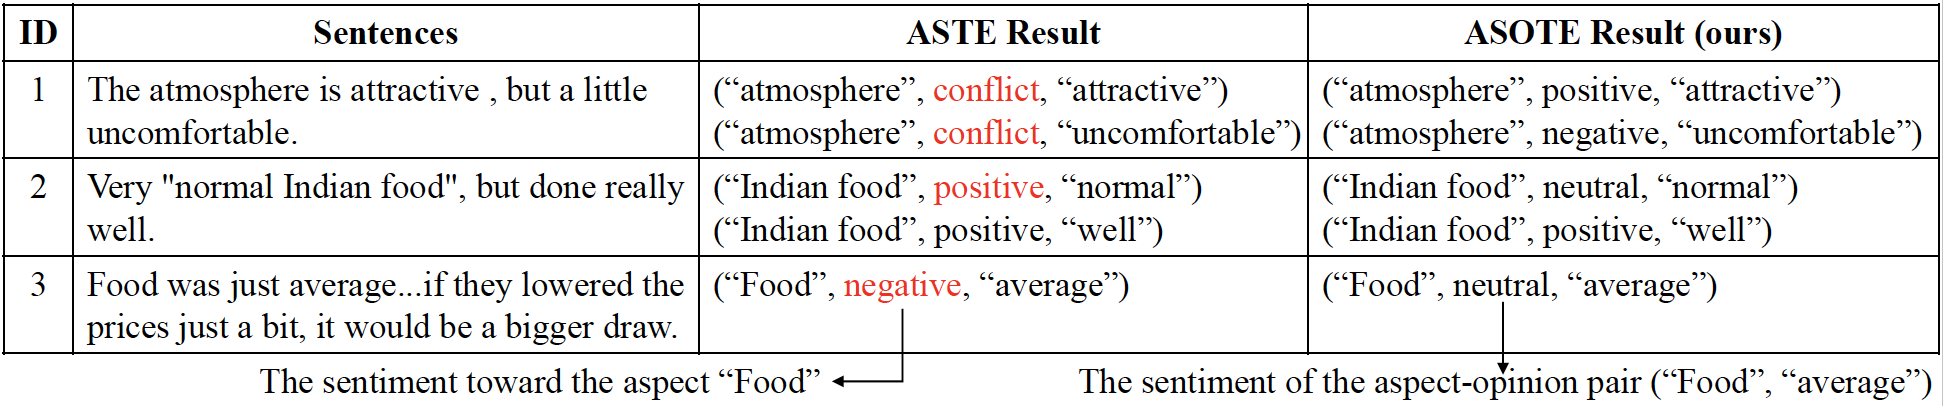 asote_vs_aste_details